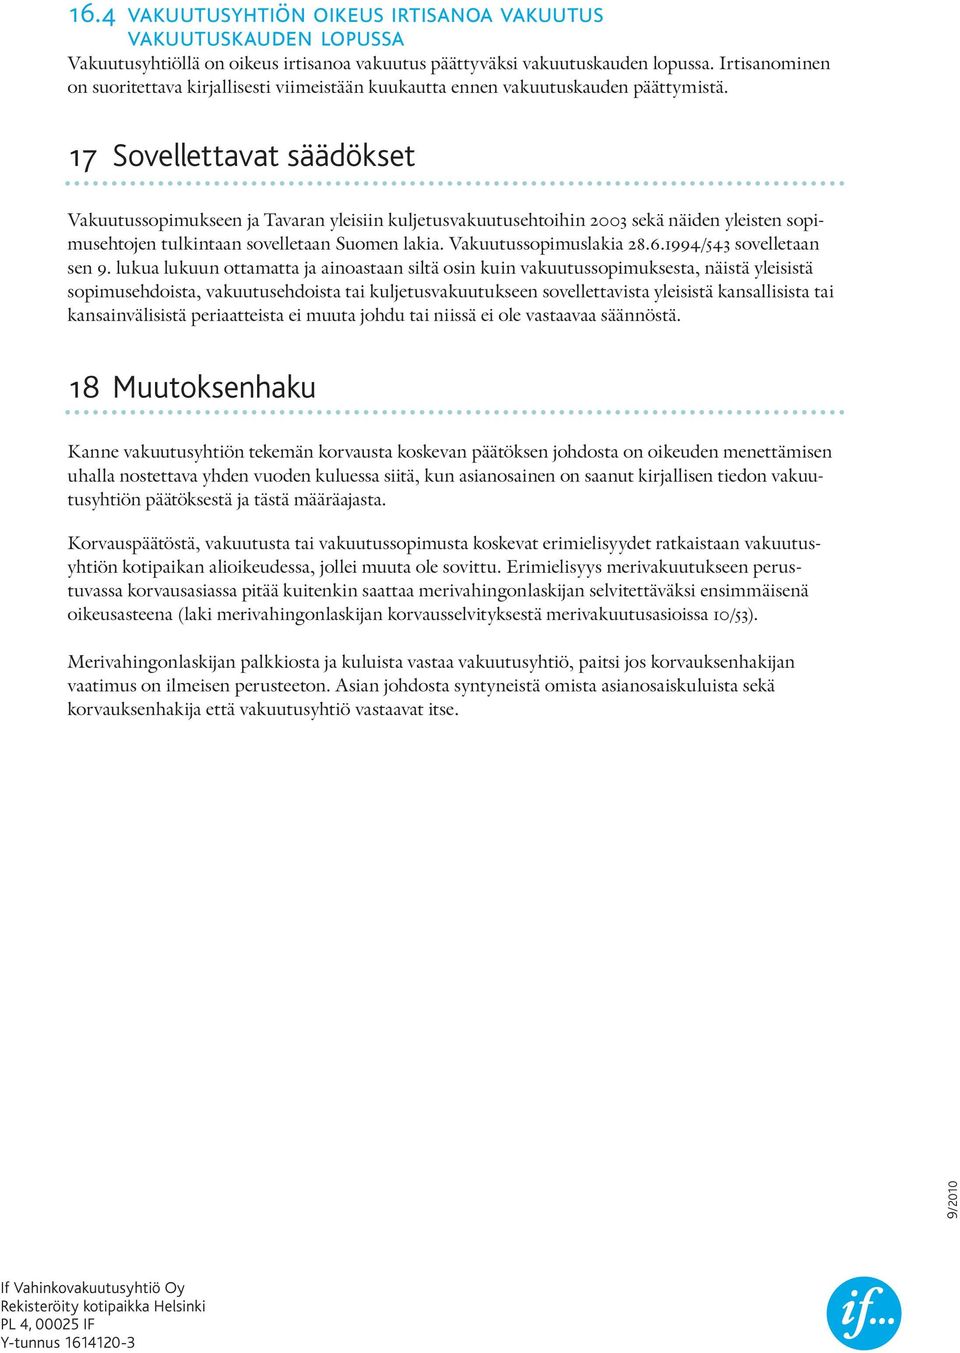 17 Sovellettavat säädökset Vakuutussopimukseen ja Tavaran yleisiin kuljetusvakuutusehtoihin 2003 sekä näiden yleisten sopimusehtojen tulkintaan sovelletaan Suomen lakia. Vakuutussopimuslakia 28.6.